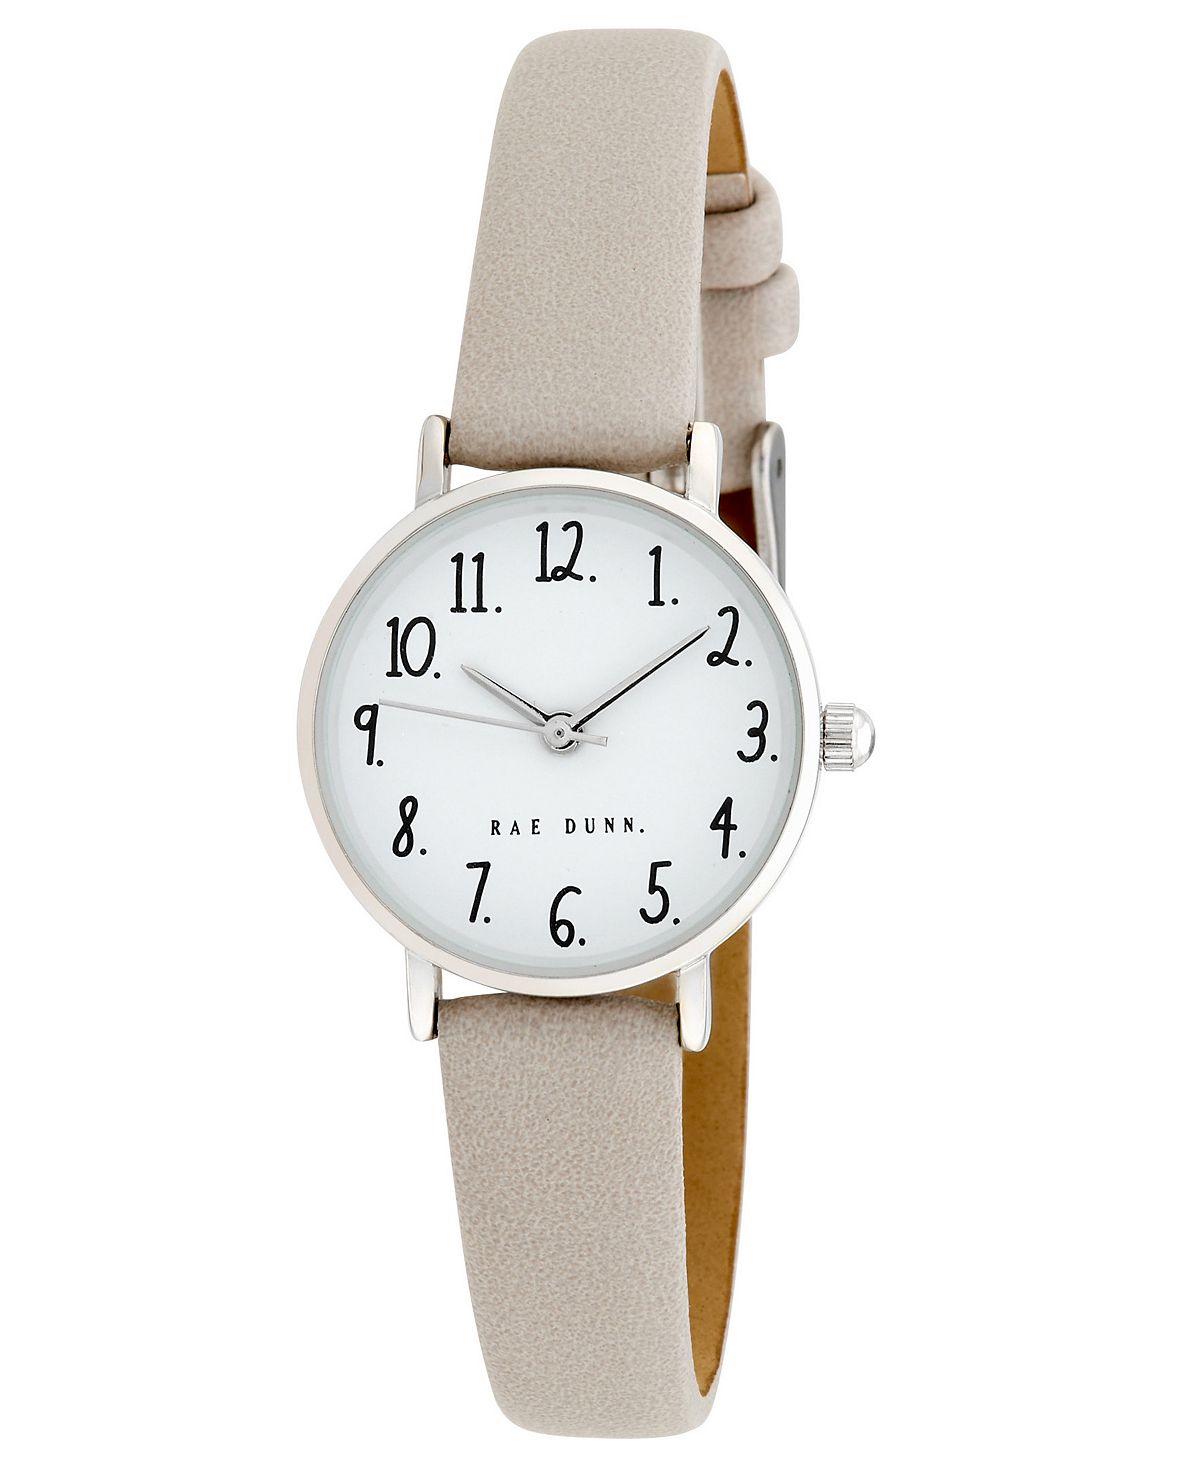 Женские часы Megan Grey с полиуретановым ремешком, 26 мм Rae Dunn, серый